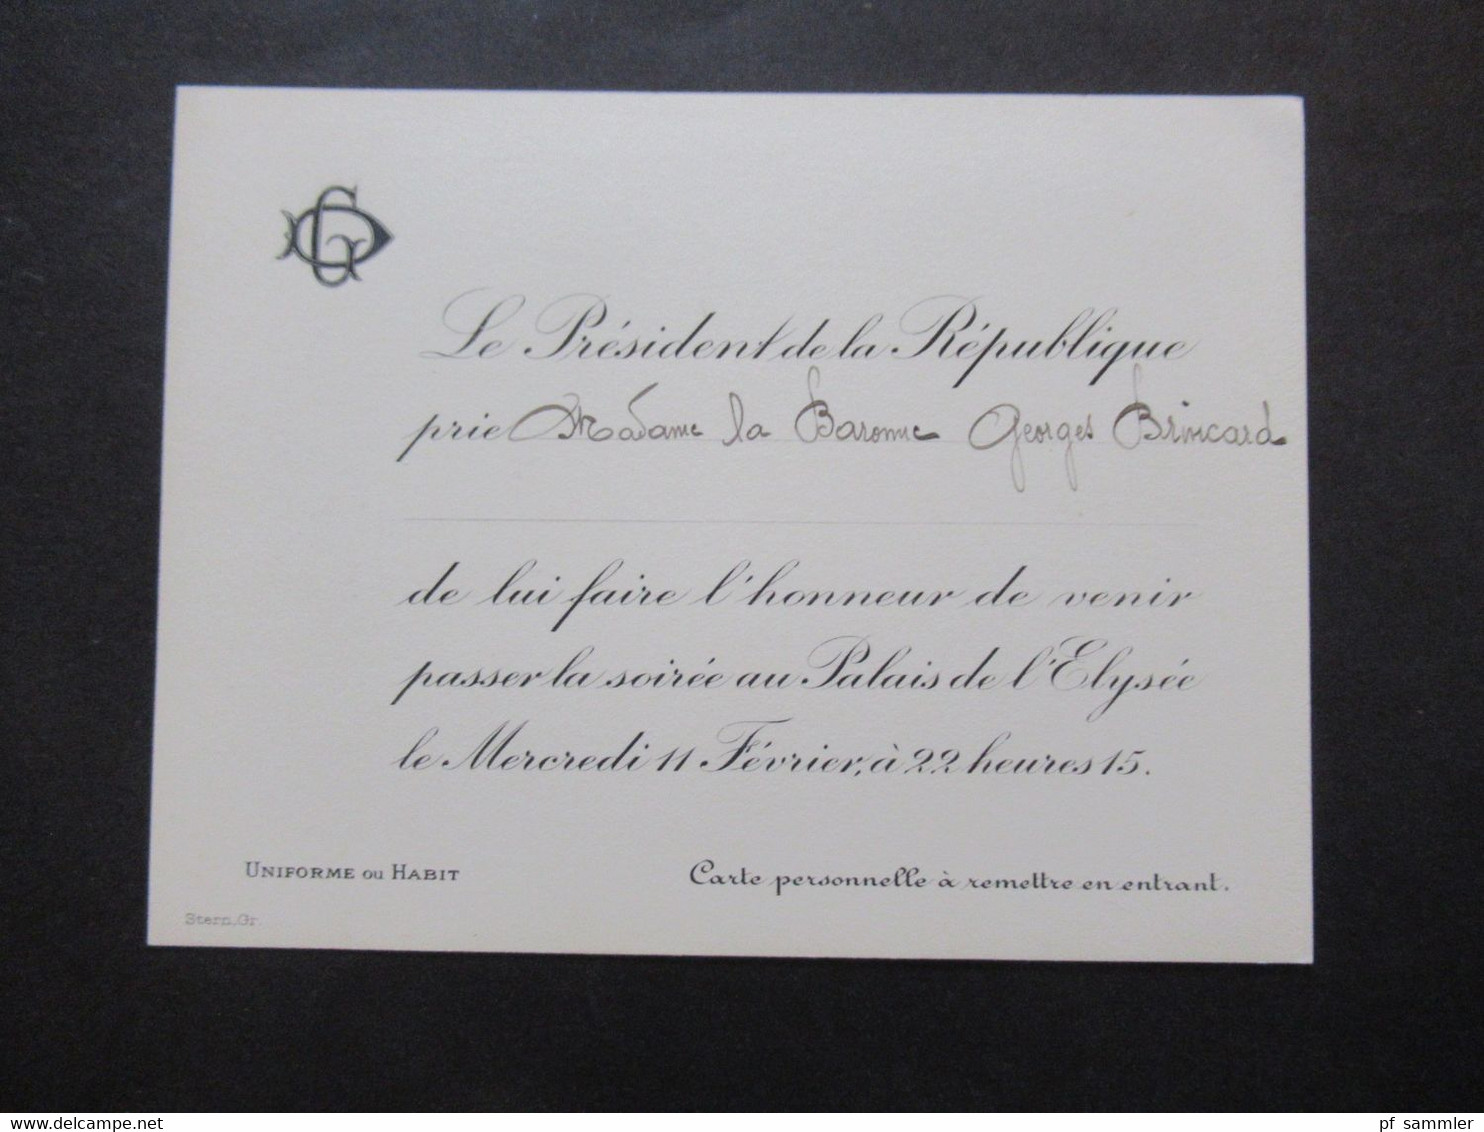 Frankreich 1920er Jahre 2x Originale Einladungskarte Von Gaston Doumergue Le President De La Republique Zur Soirée - Toegangskaarten